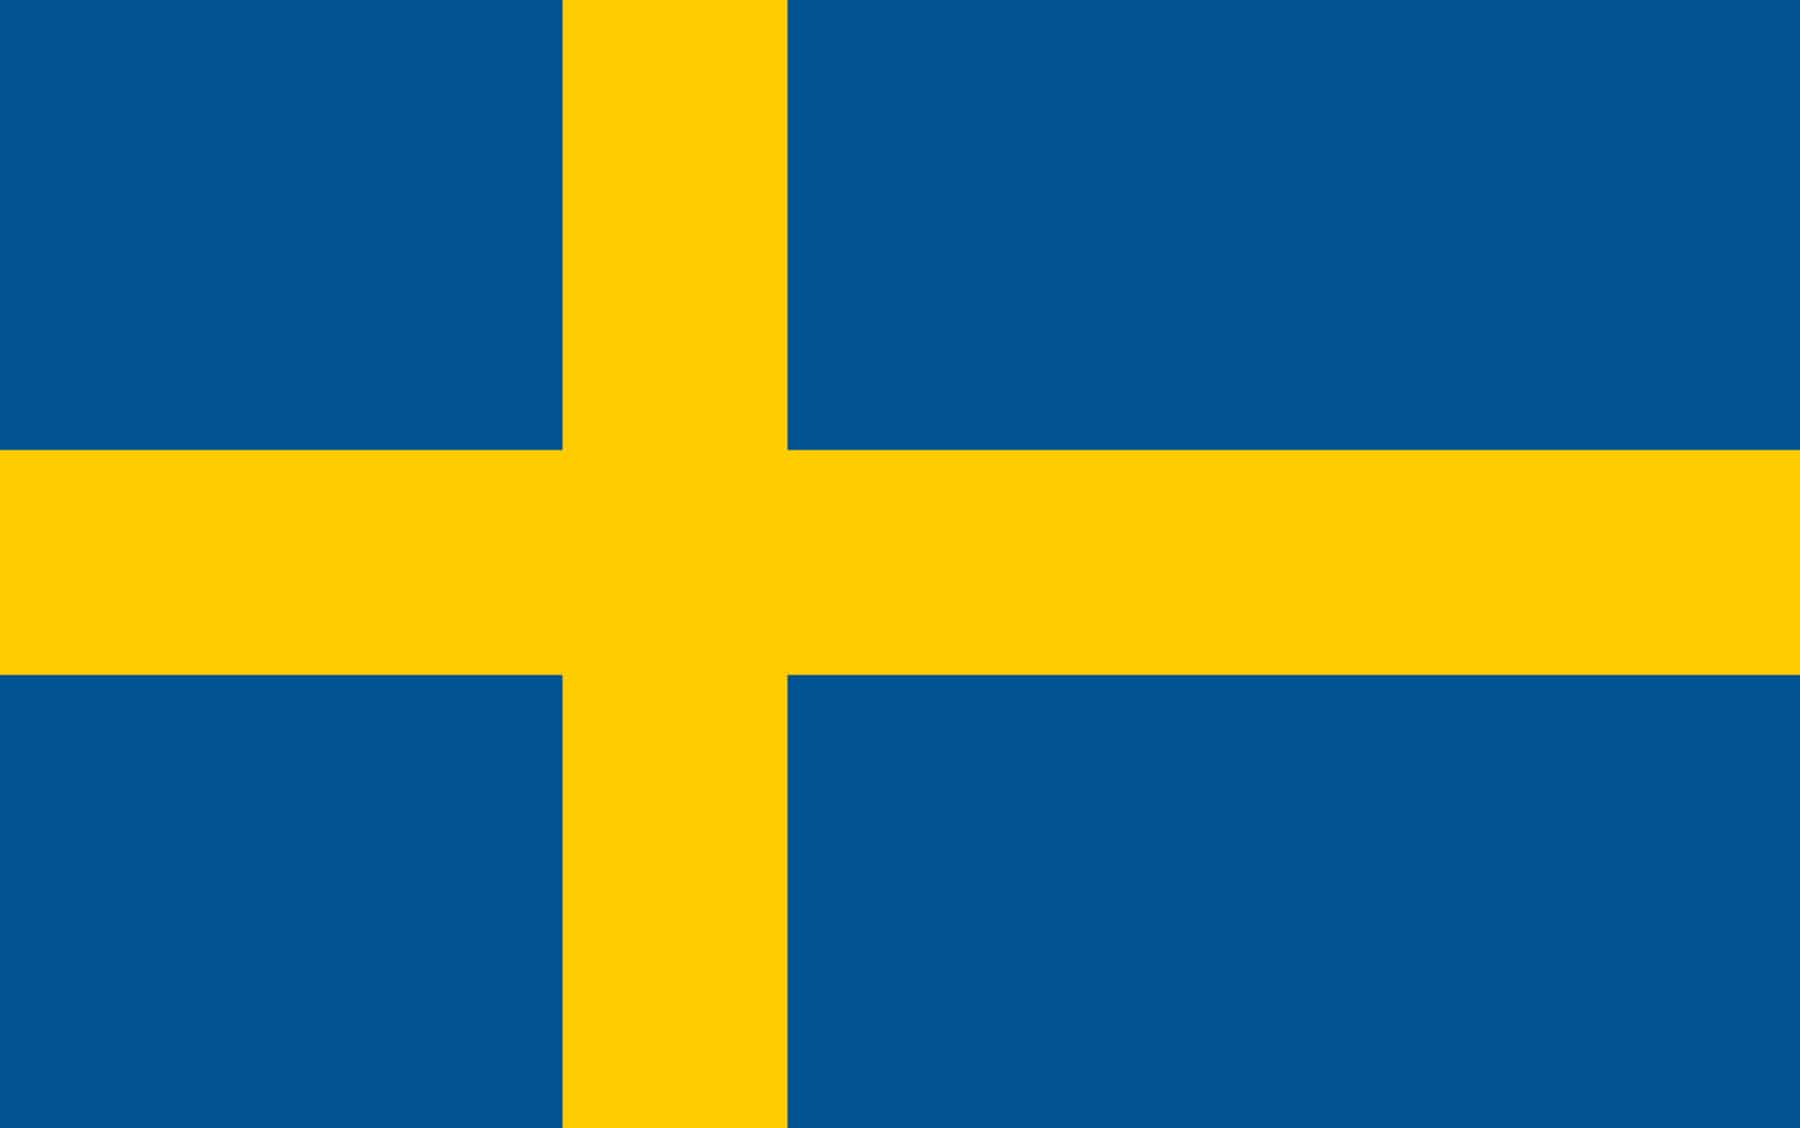 schweden-verhaftet-vier-personen-wegen-verdachts-auf-terrorplan